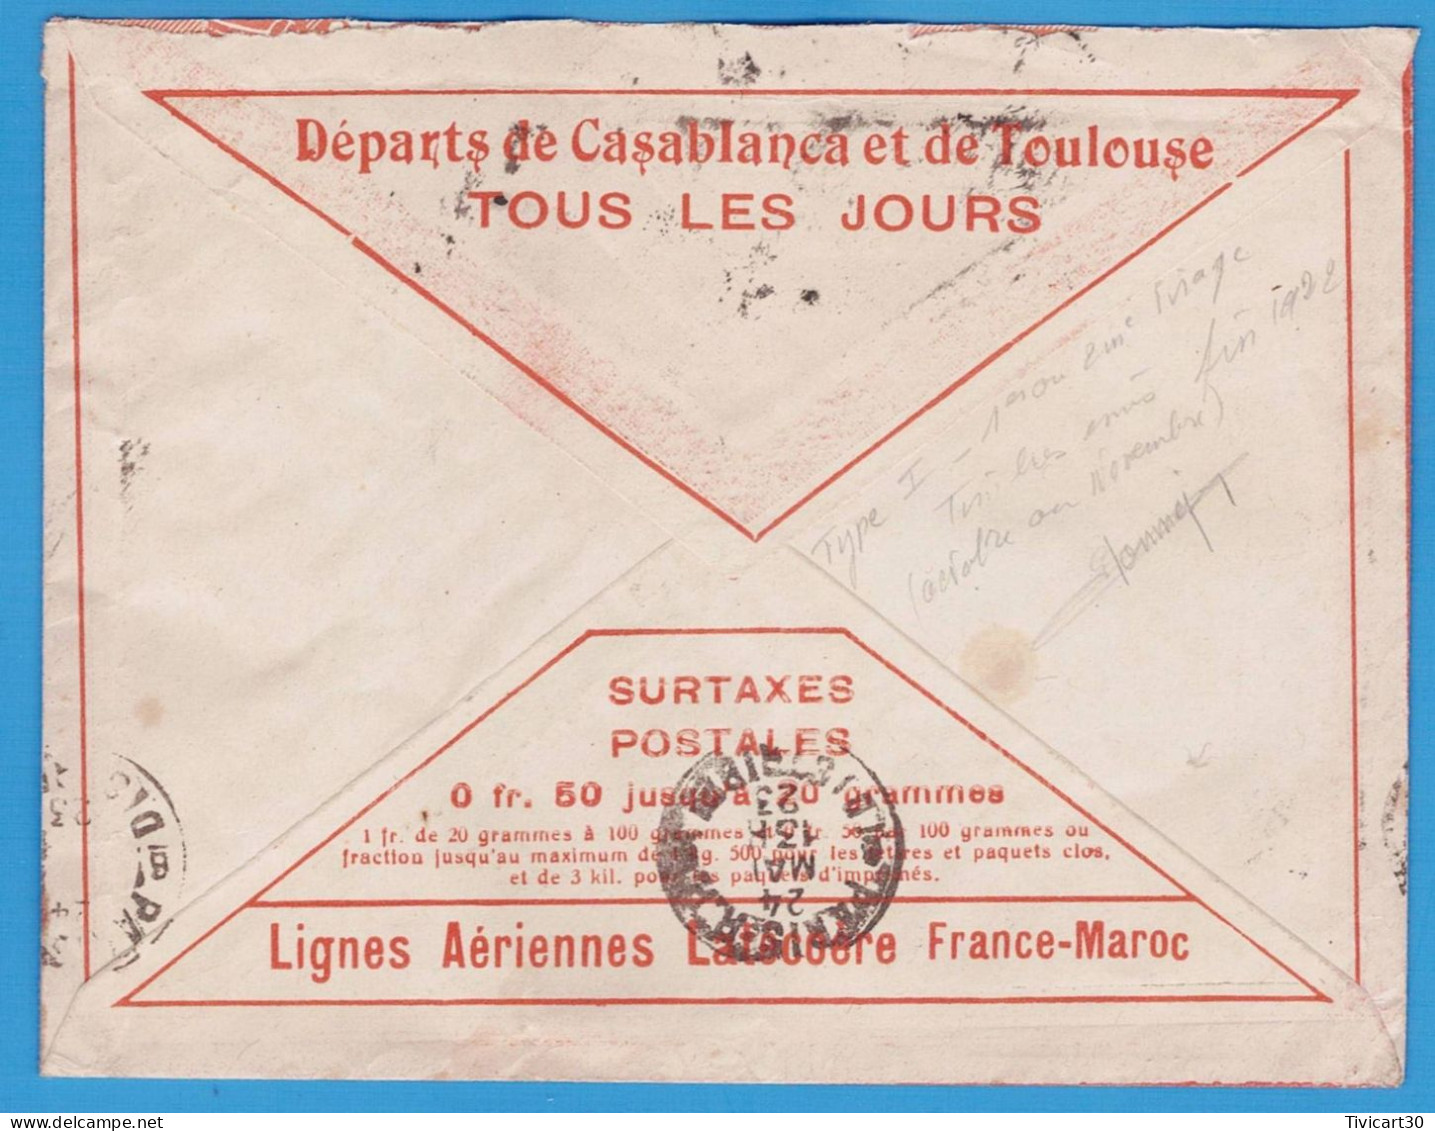 LETTRE PAR AVION DE 1923 - LIGNES AERIENNES LATECOERE FRANCE-MAROC - CASABLANCA (MAROC) POUR PARIS - Poste Aérienne